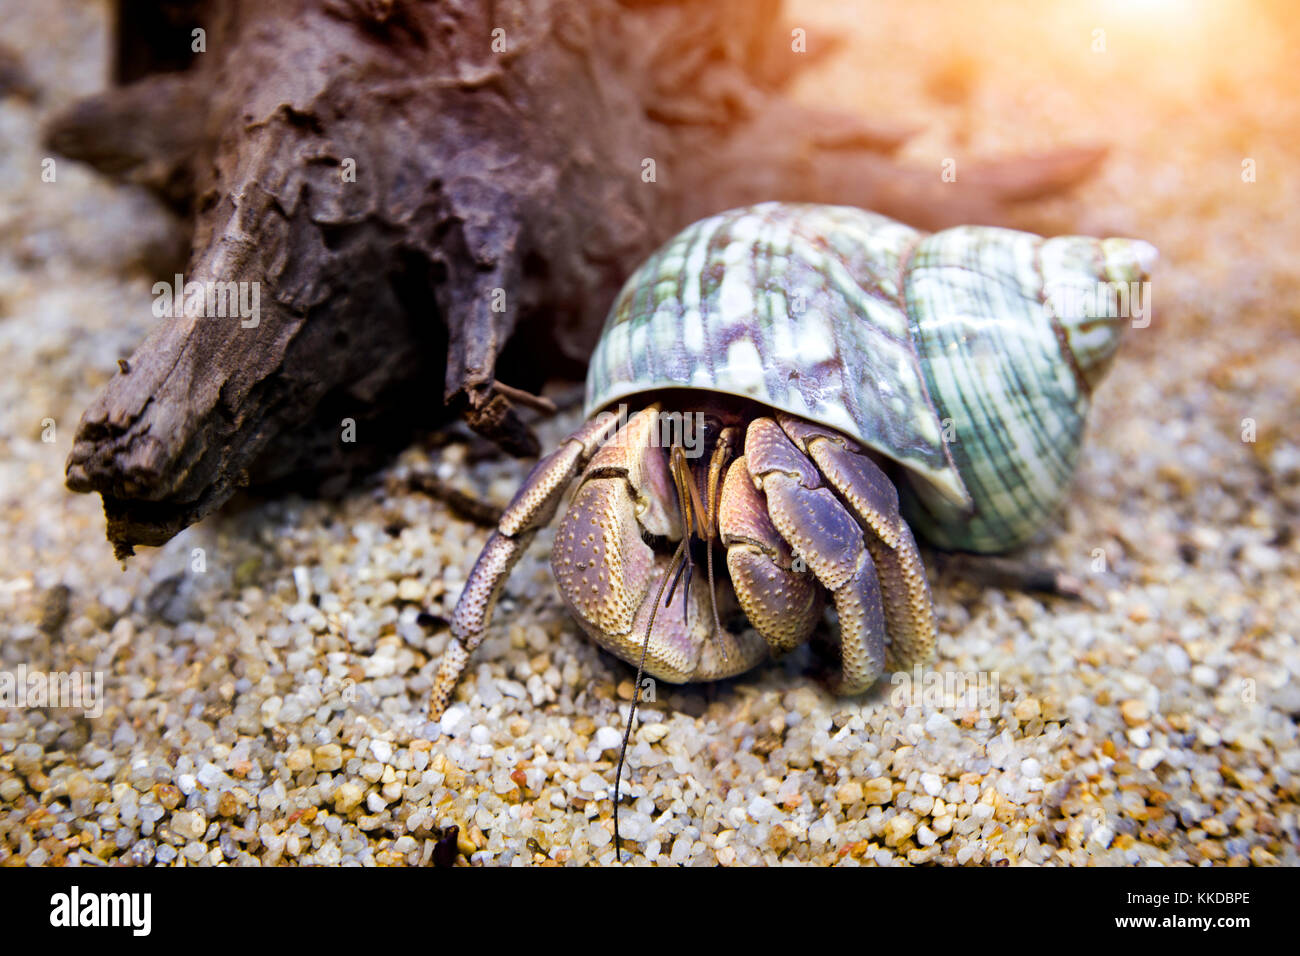 hermit crab exotic pet in aquarium Stock Photo